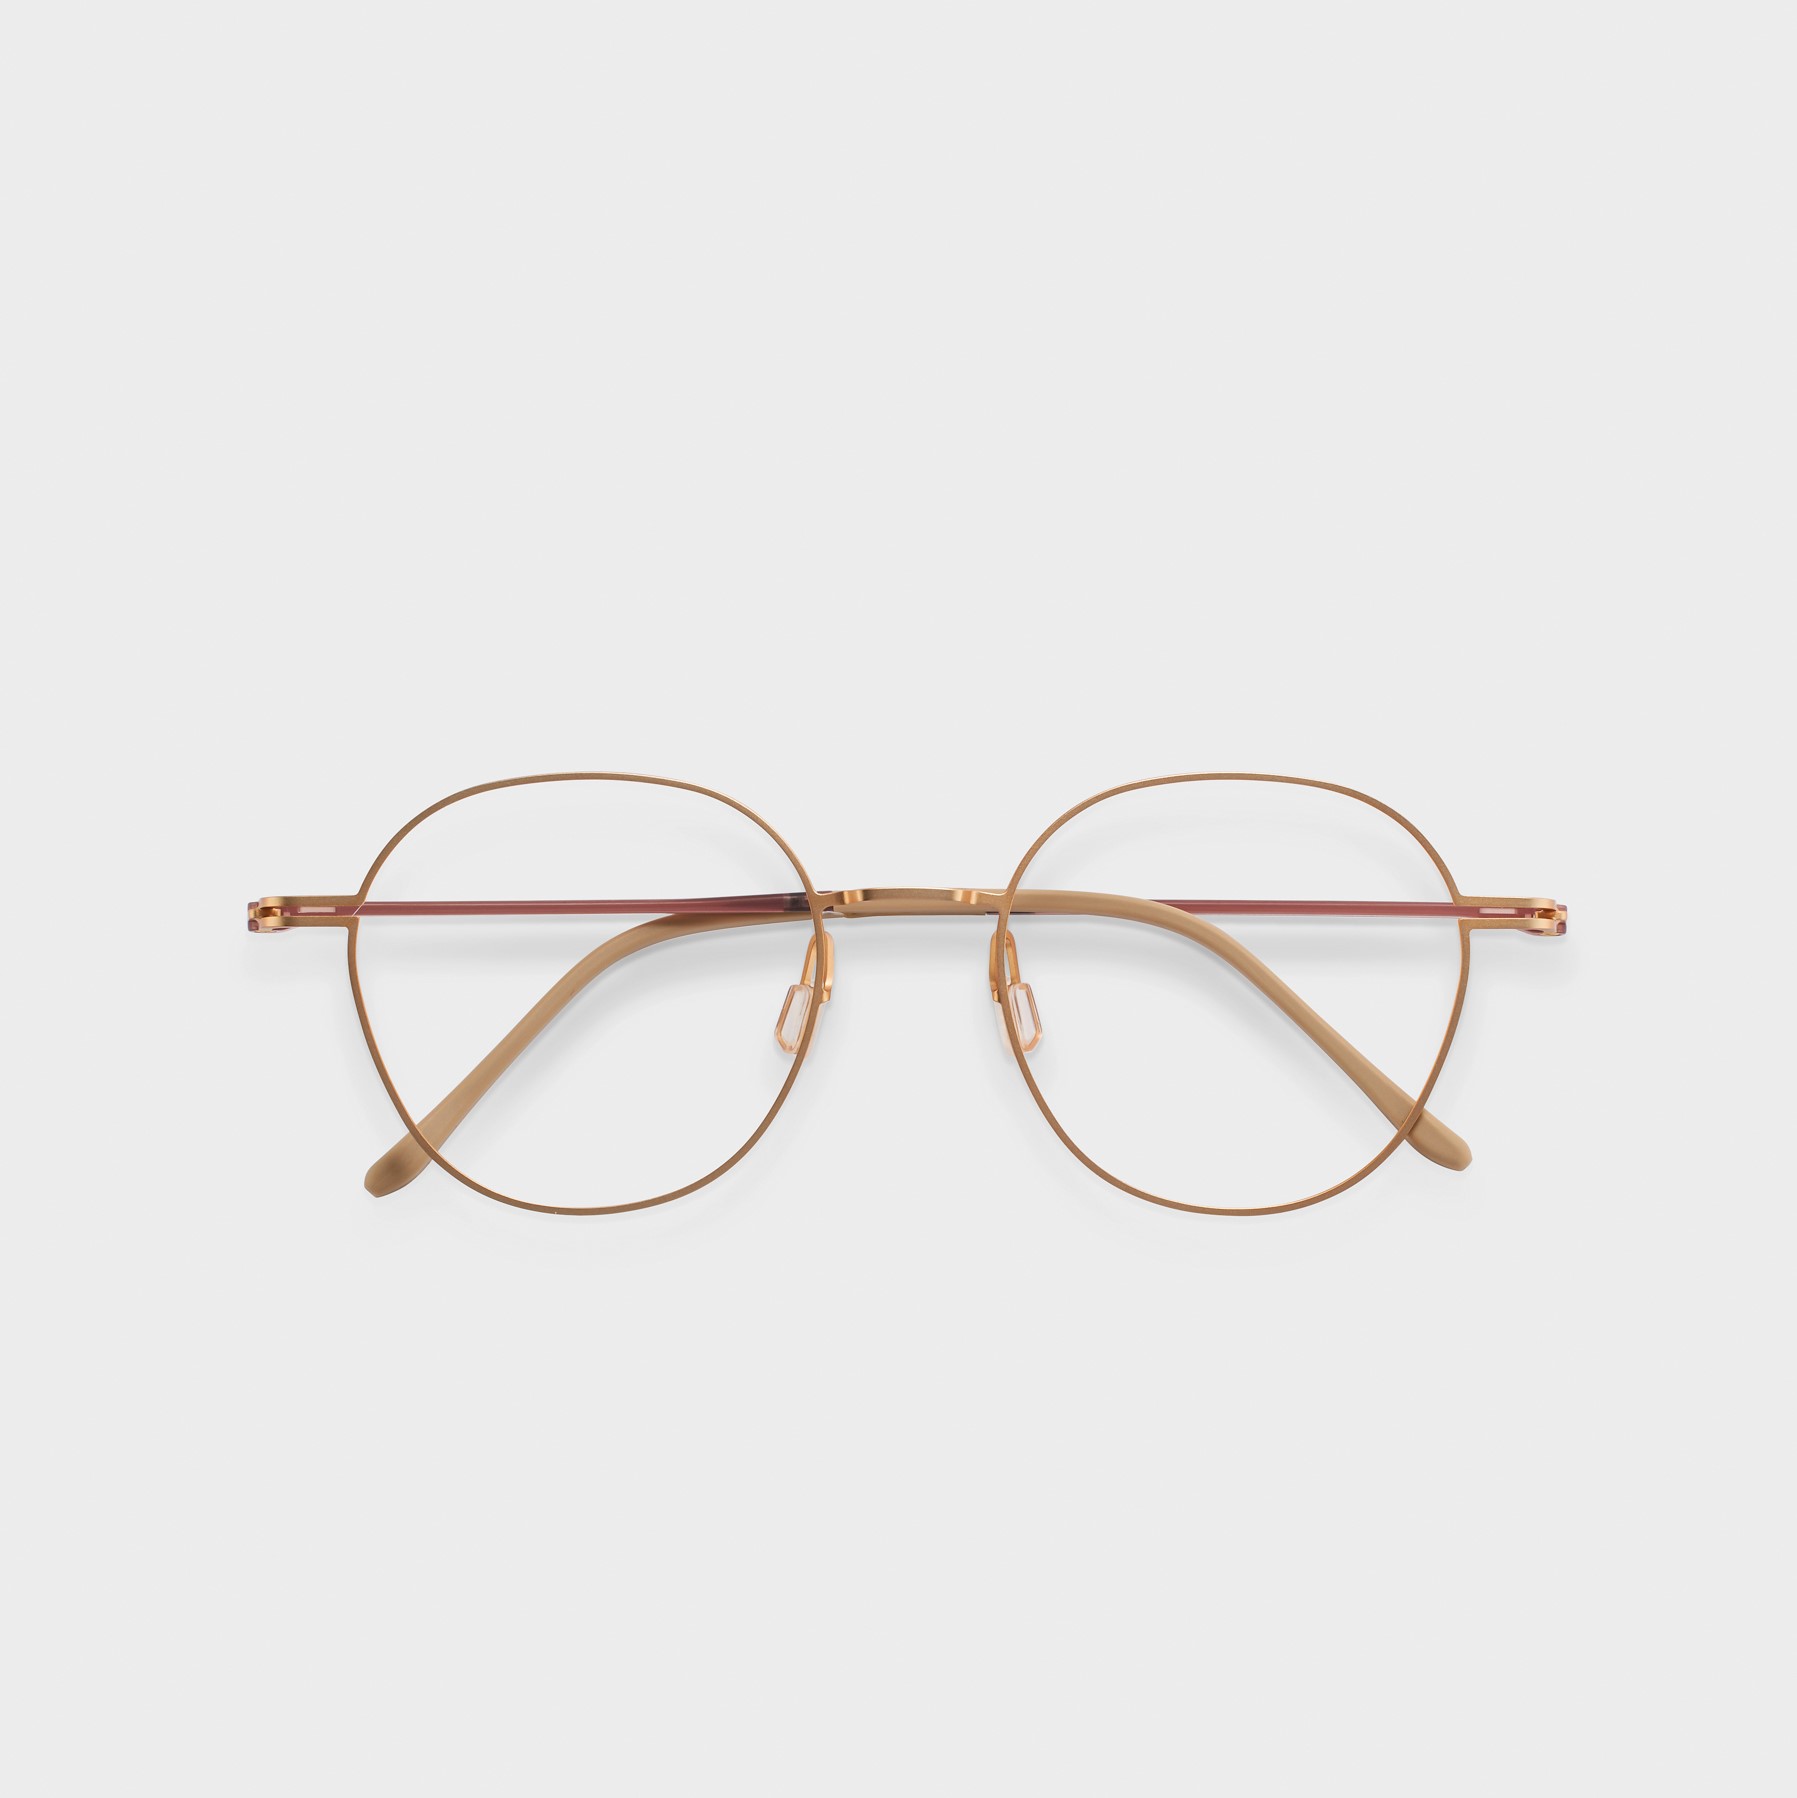 _CLROTTE_ Eyewear Glasses_ SLEEK